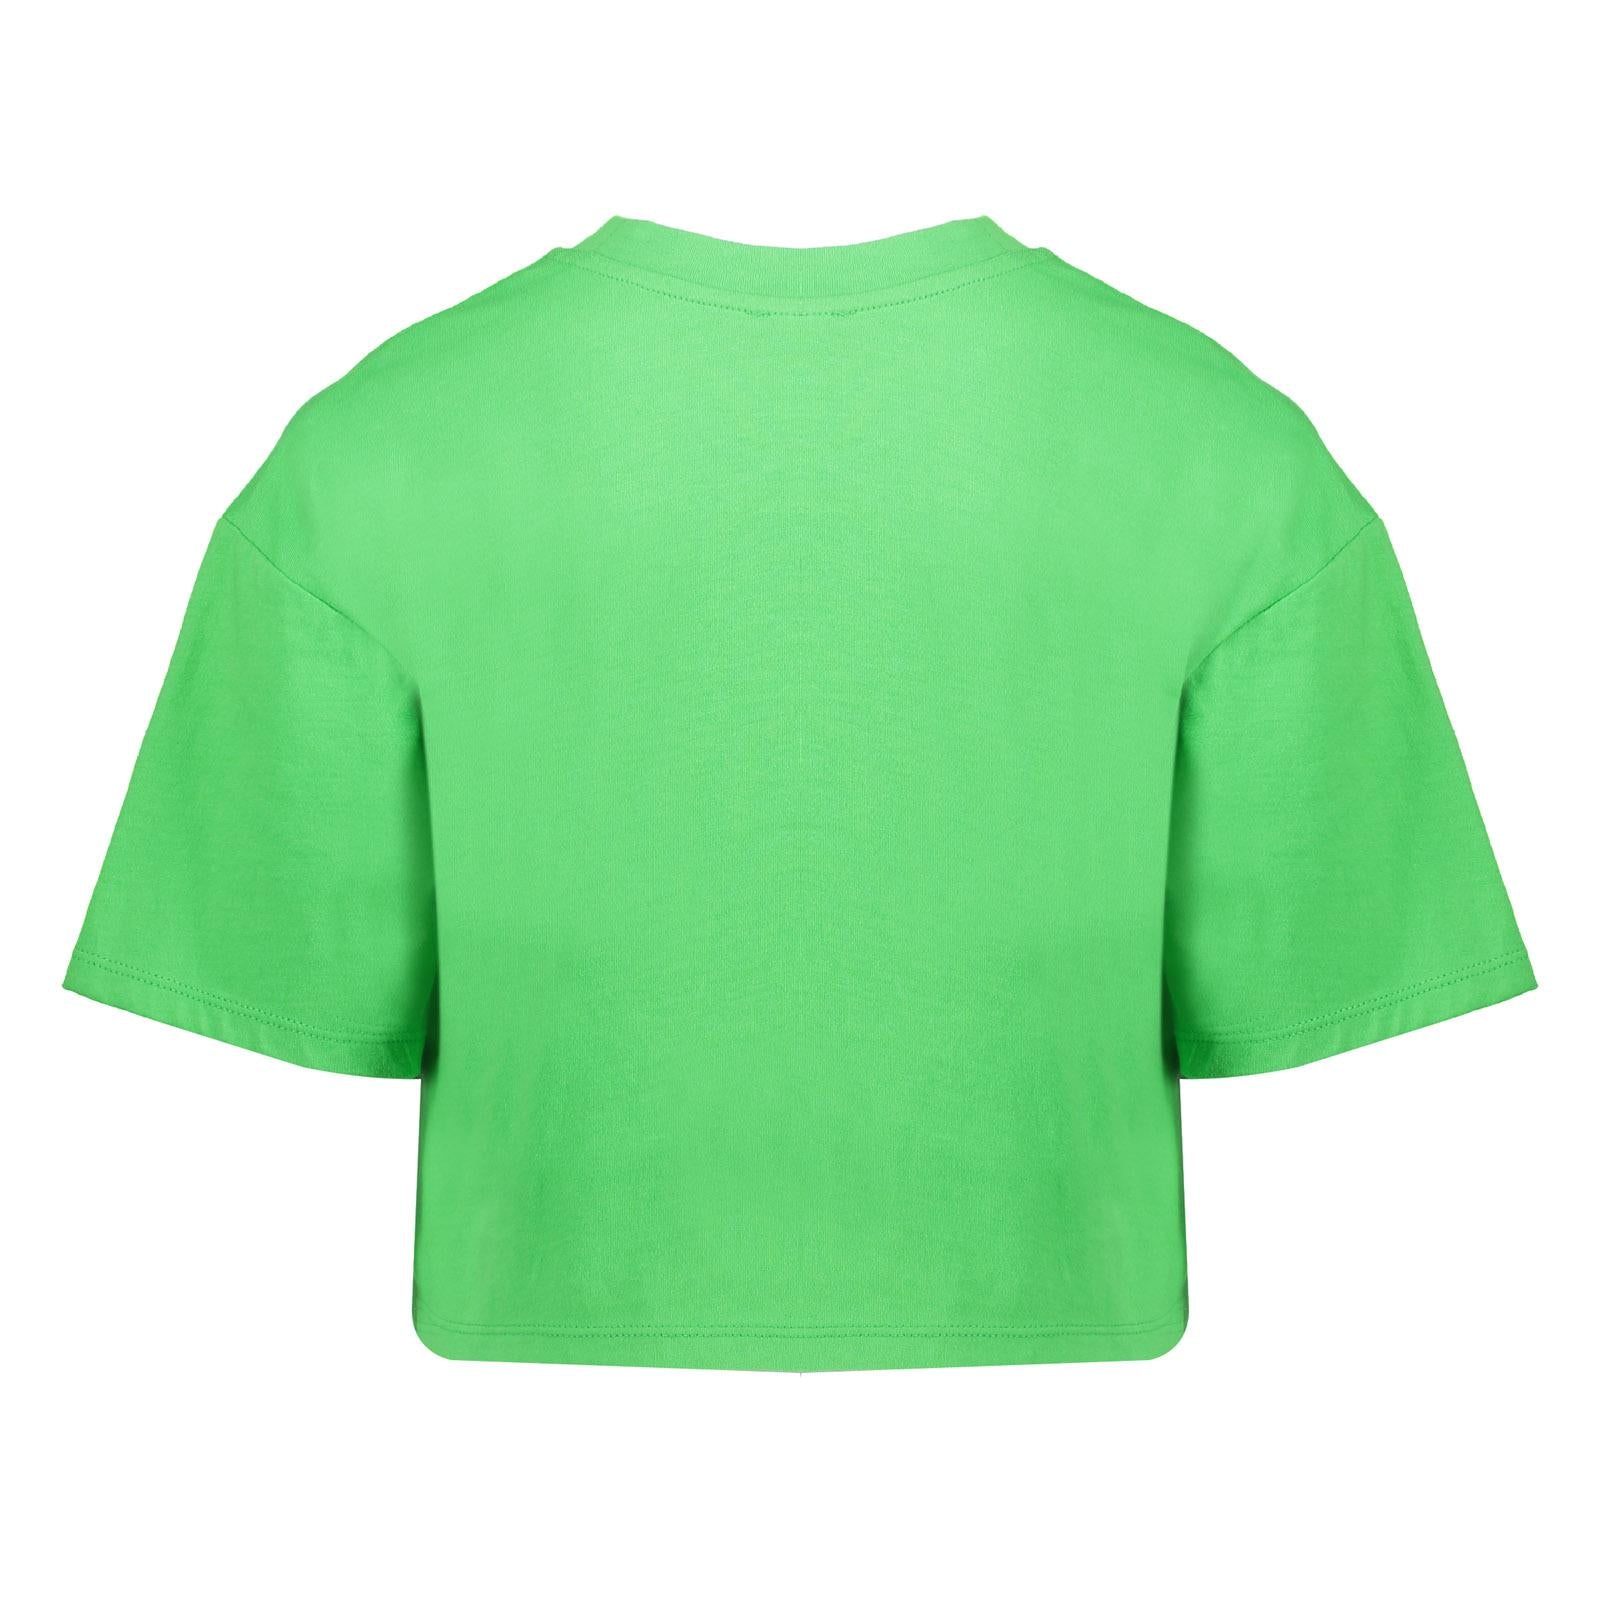 Meisjes T-shirt cropped "positive energy"  van Geisha in de kleur bright green/lime in maat 176.